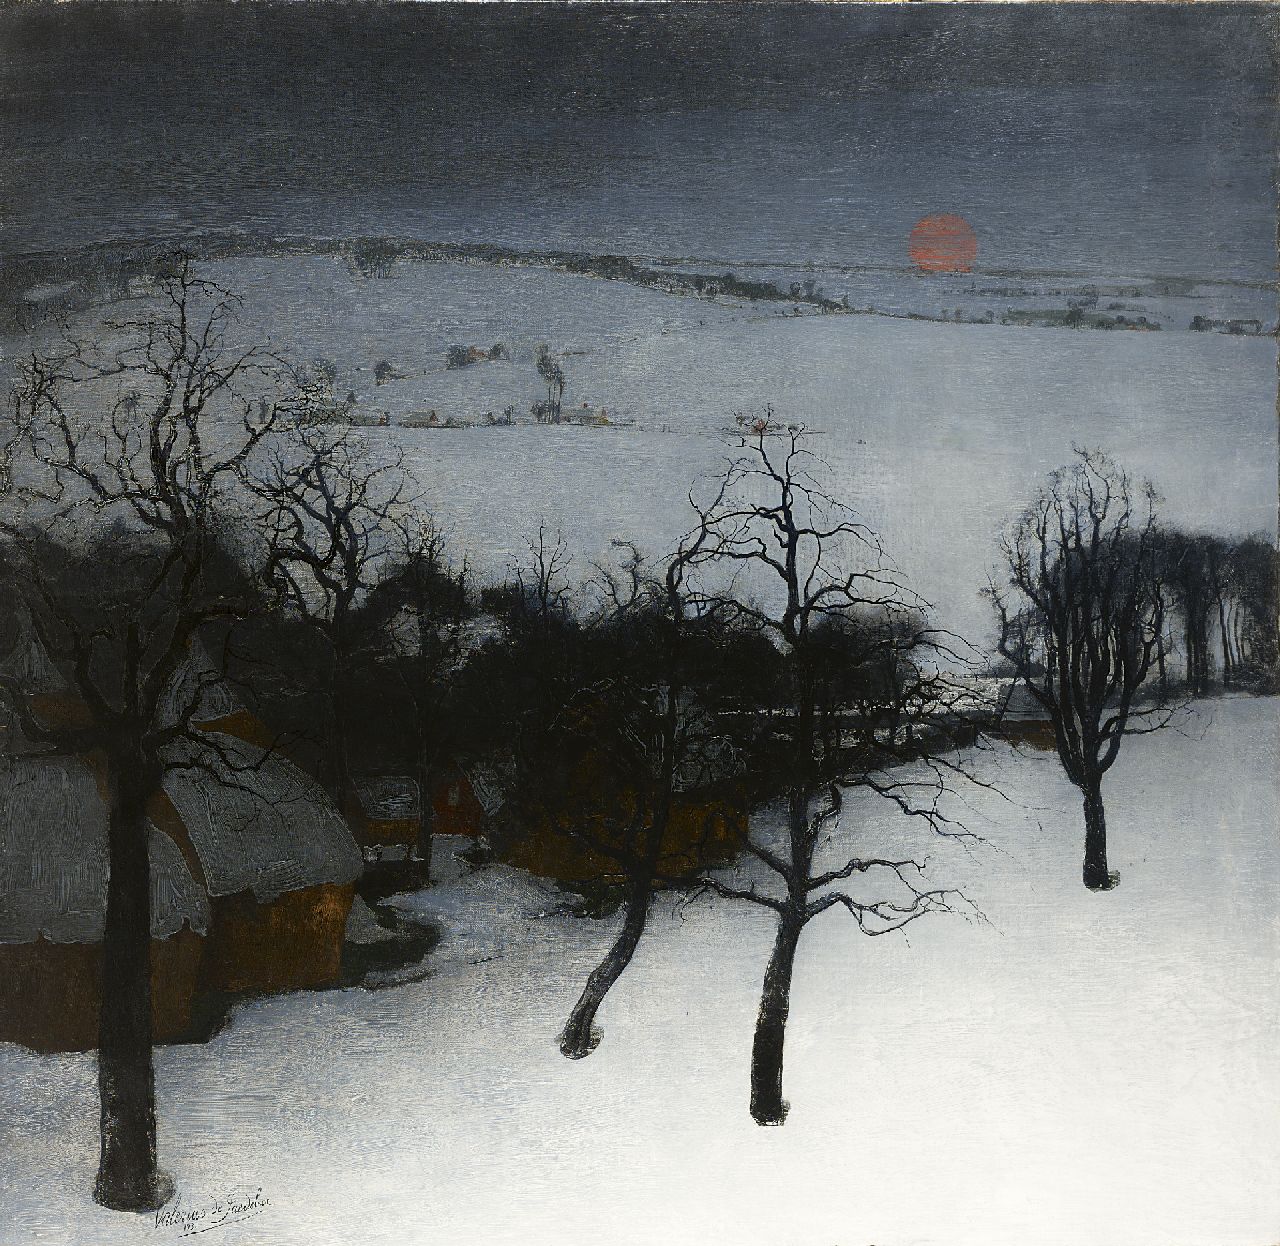 Saedeleer V. de | Valerius de Saedeleer, A winter landscape, oil on canvas 126.0 x 131.0 cm, signed l.l. and dated 1931